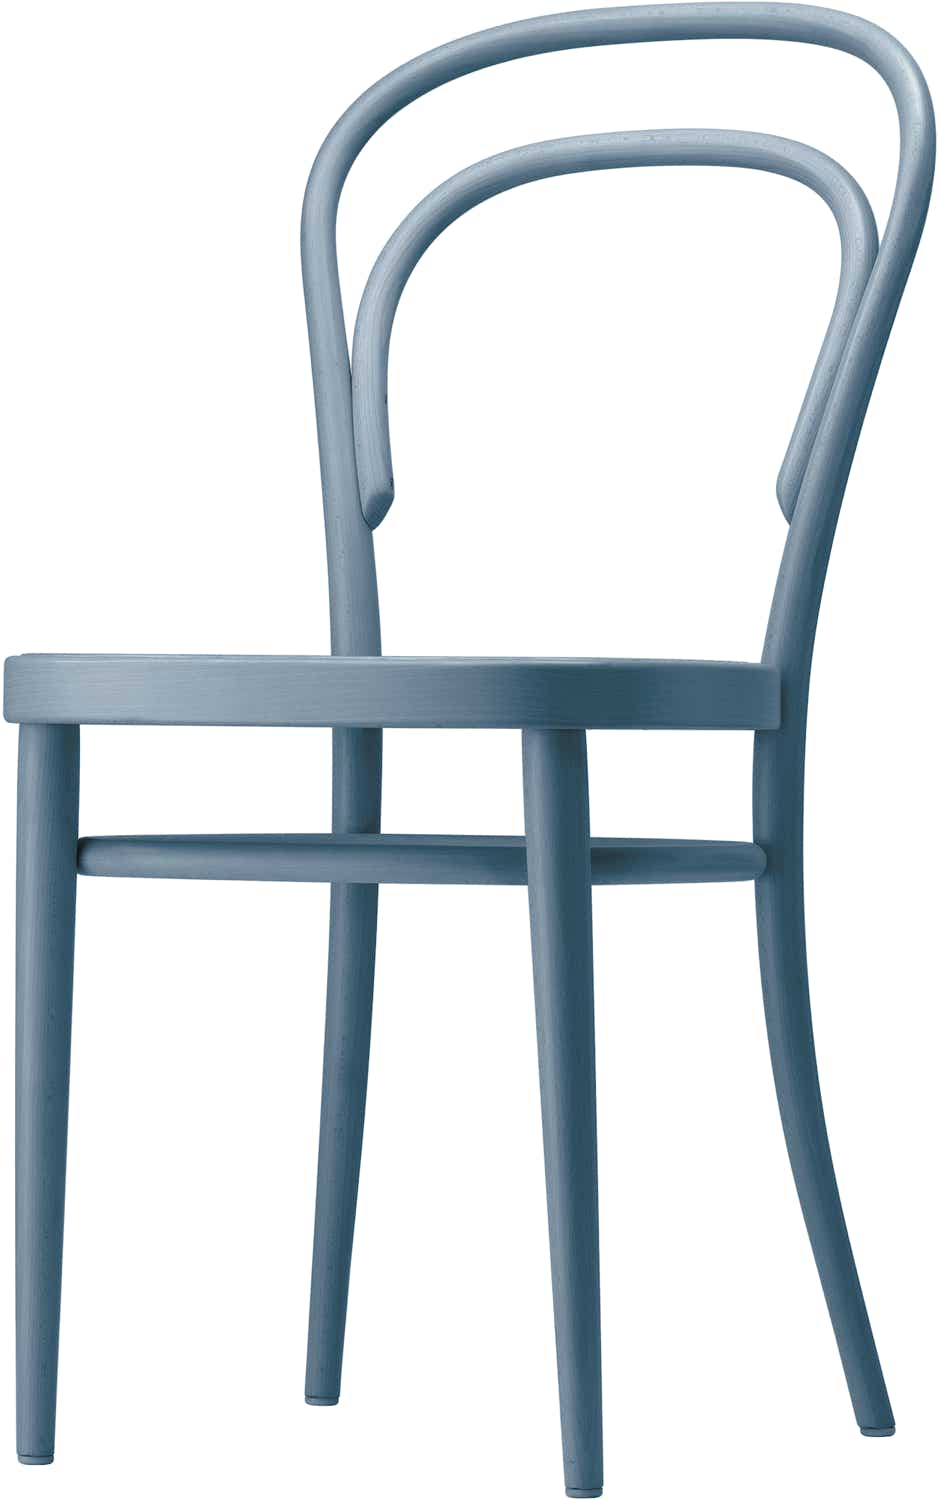 214 Chair